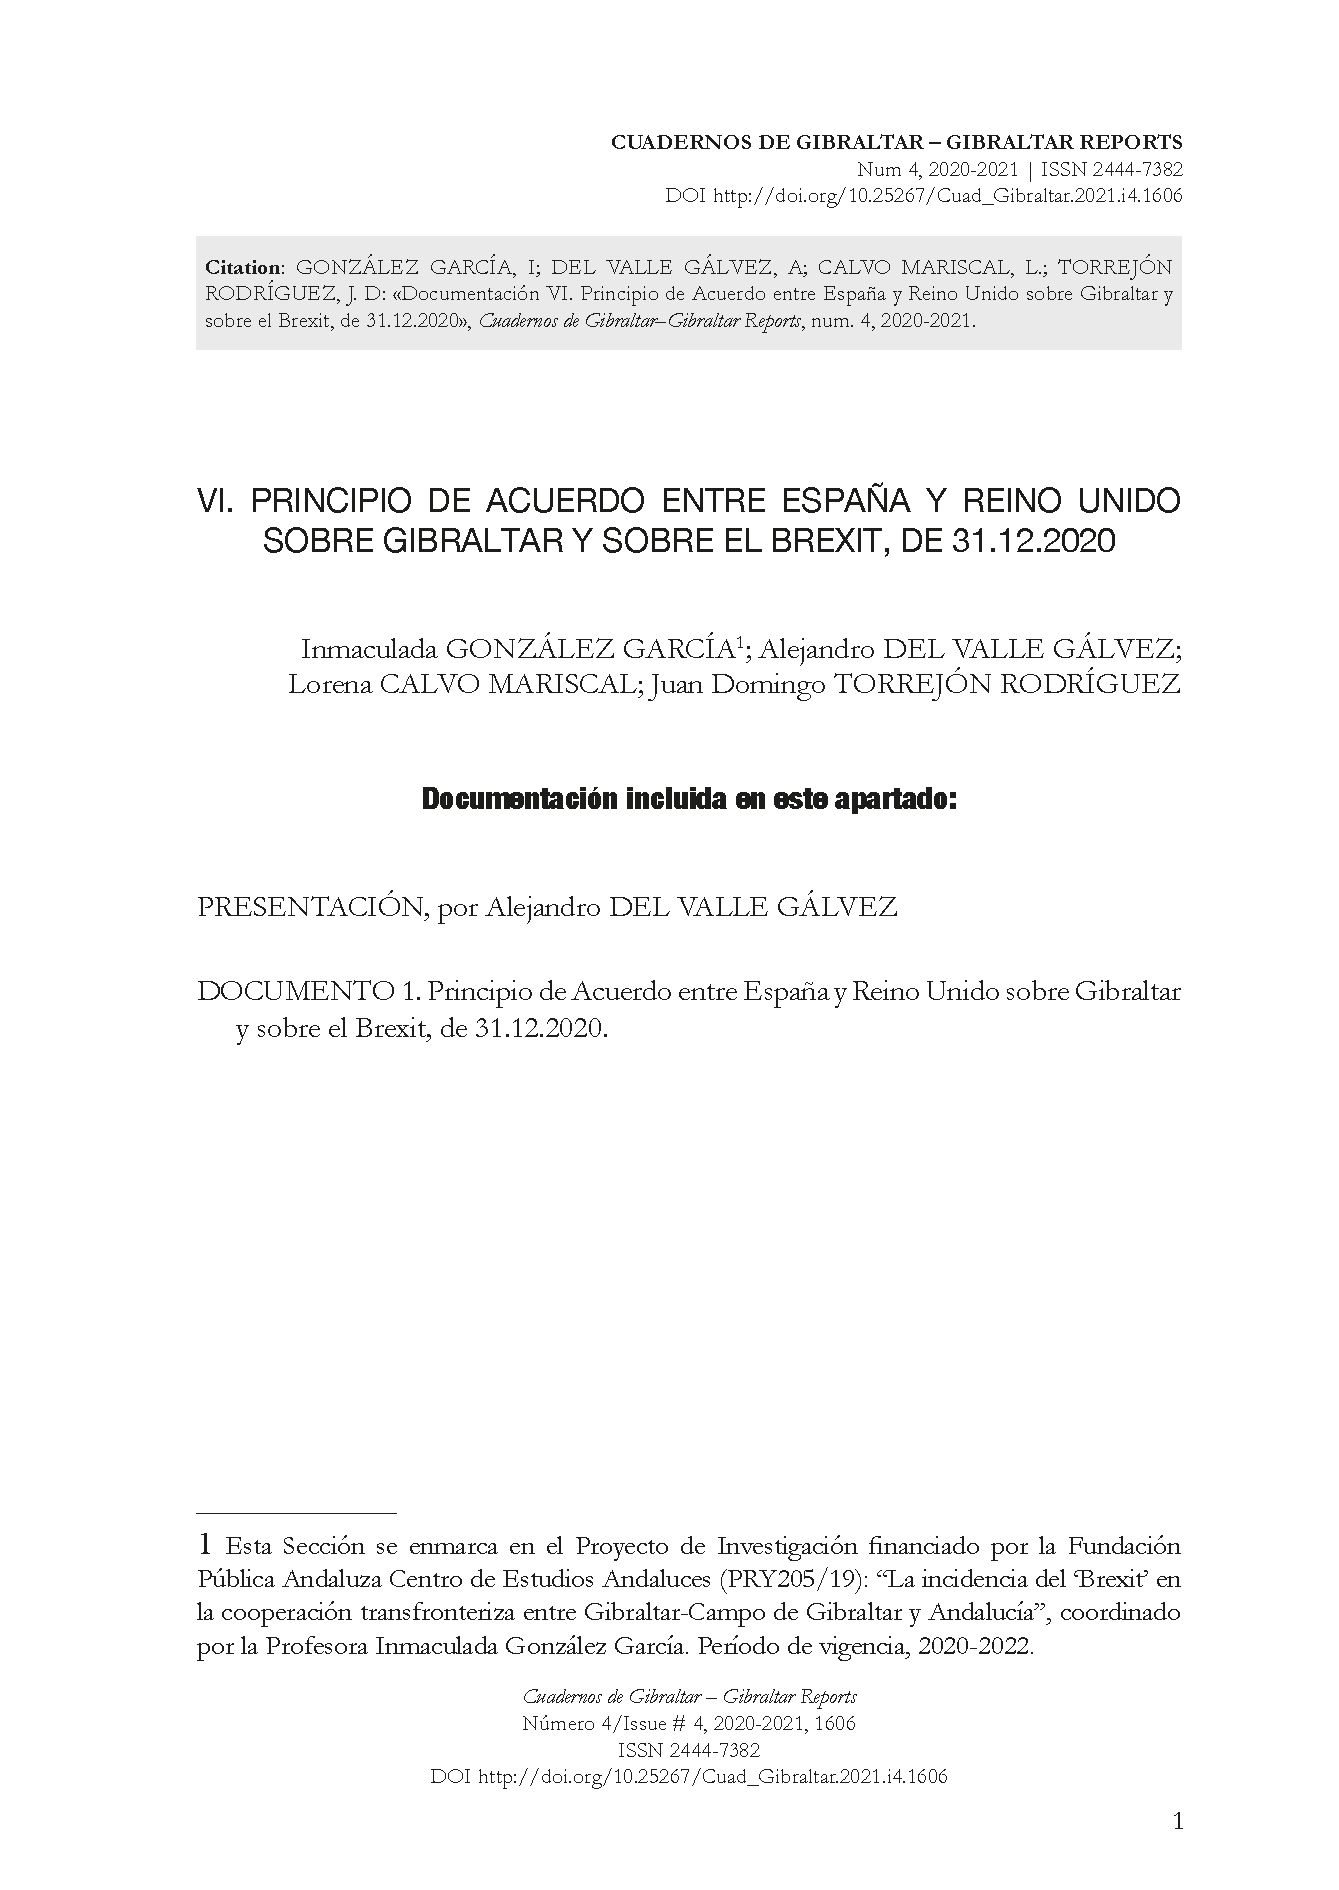 Documentación VI. Principio de Acuerdo entre España y Reino Unido sobre Gibraltar y sobre el Brexit, de 31.12.2020